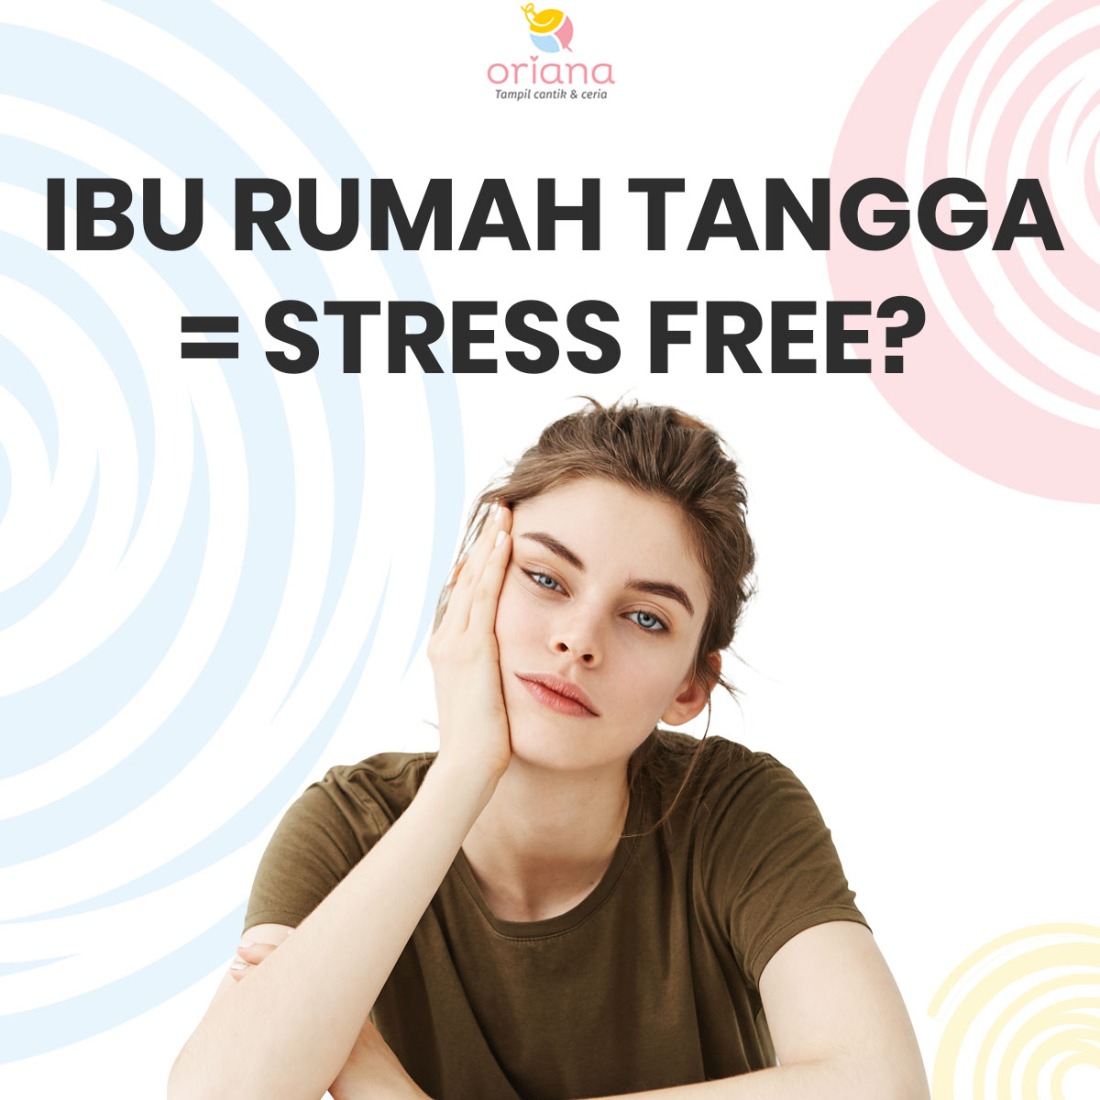 IBU RUMAH TANGGA = STRESS FREE?